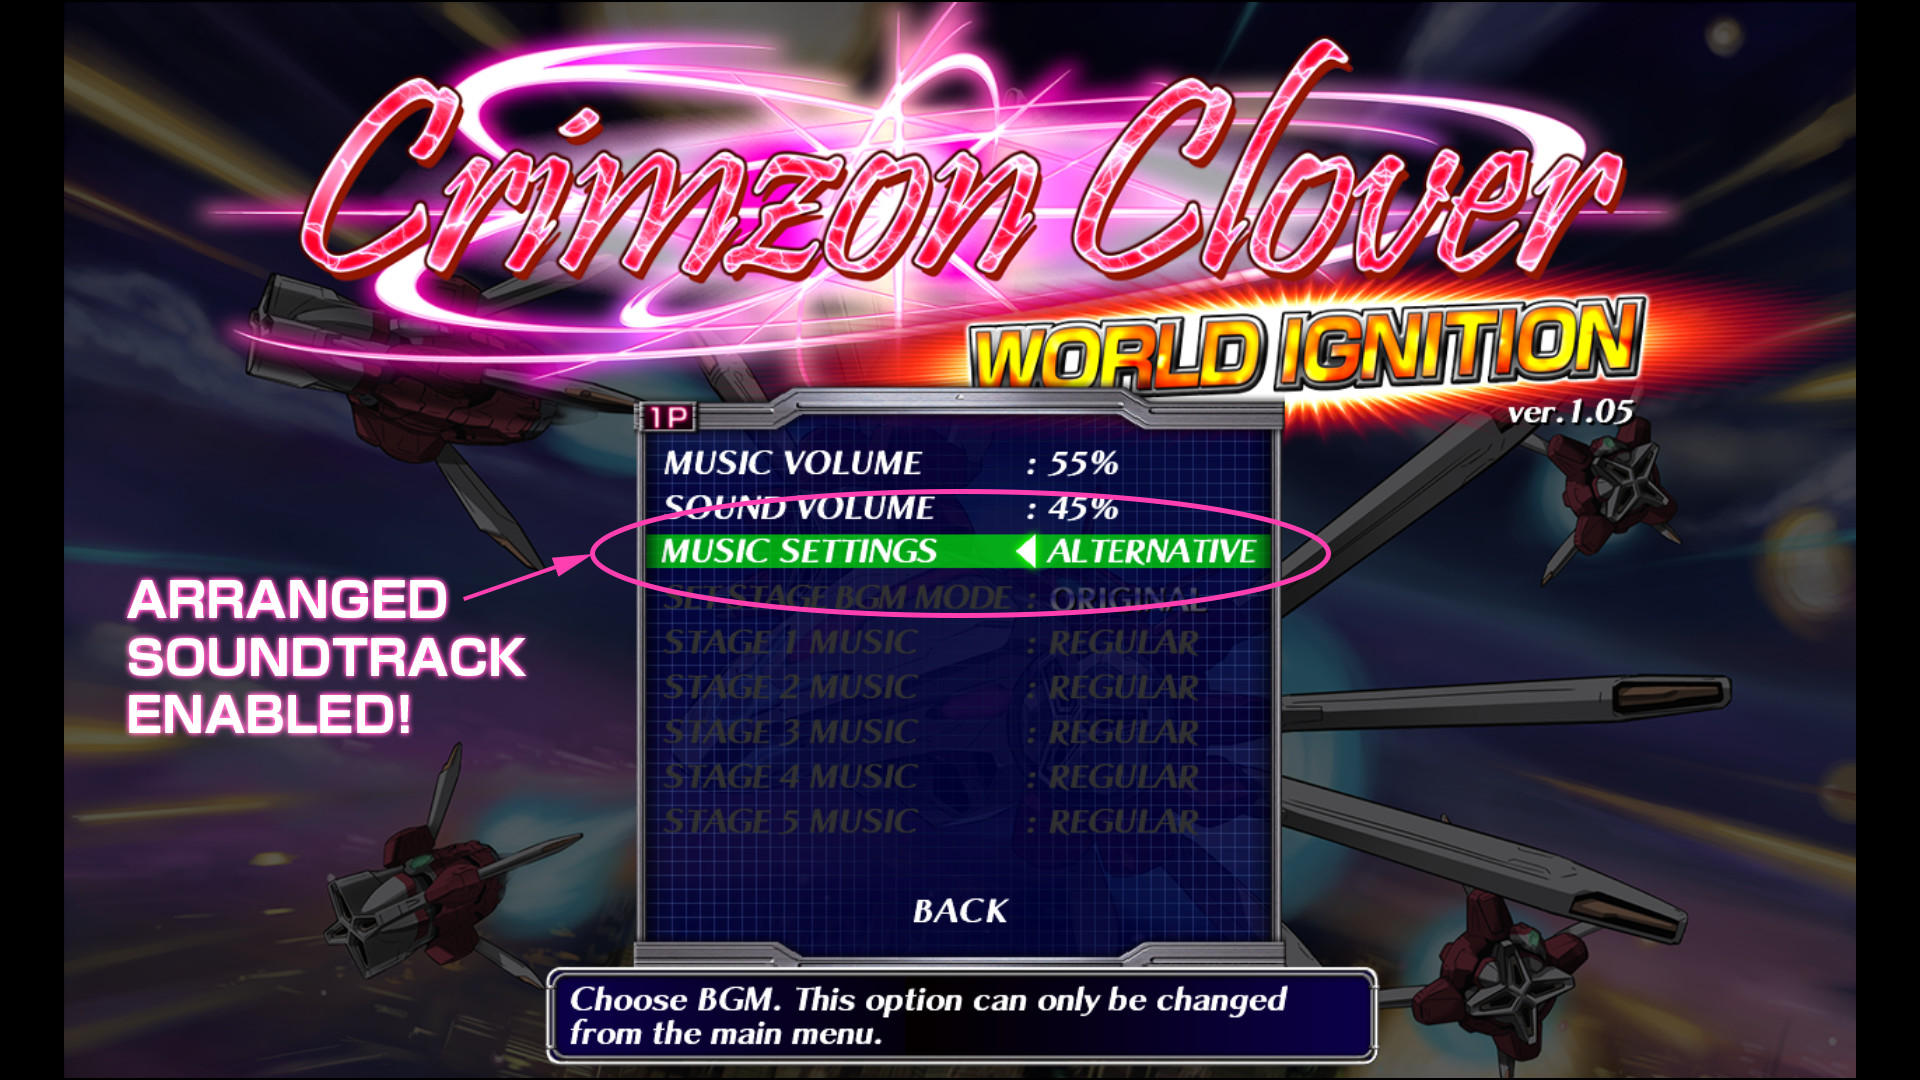 Crimzon Clover WORLD IGNITION - Arranged Sound Track Featured Screenshot #1